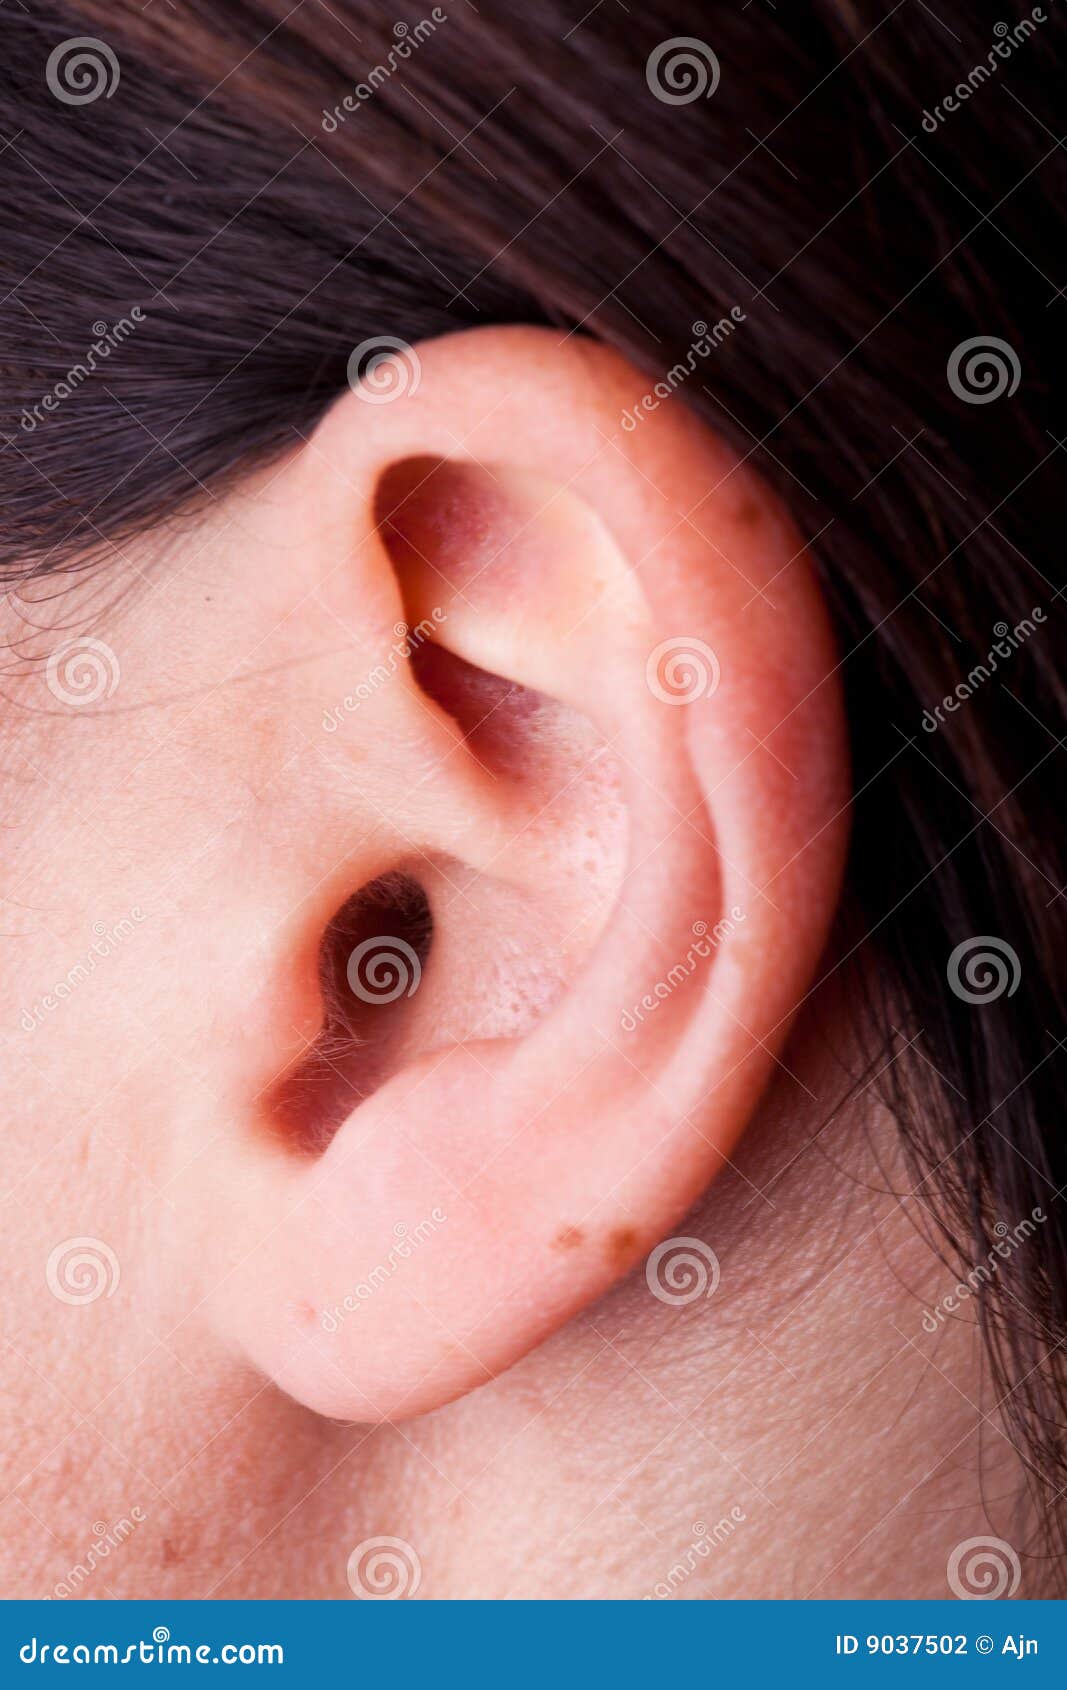 female ear #10